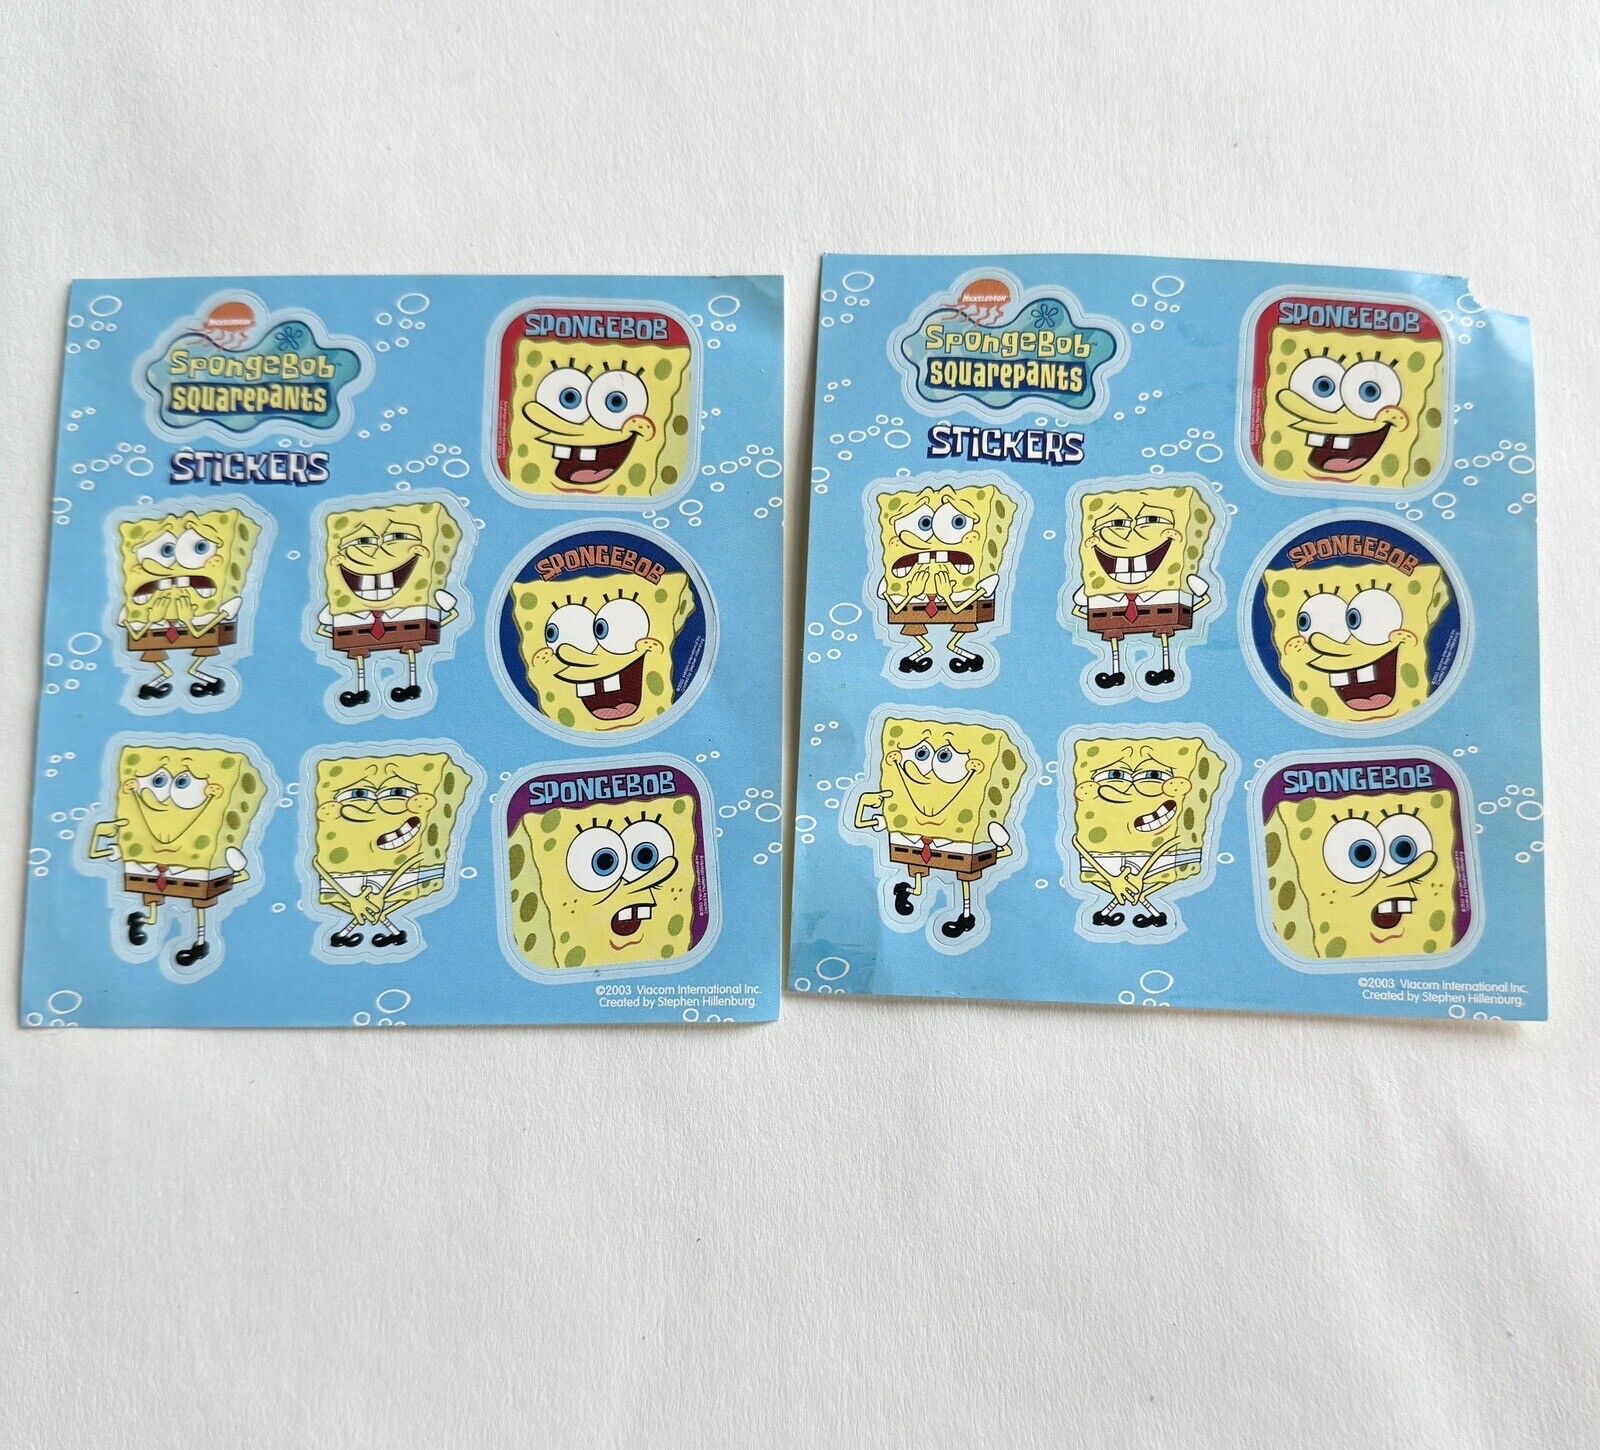 2 Vintage 2003 Viacom SpongeBob SquarePants Stickers Sheets